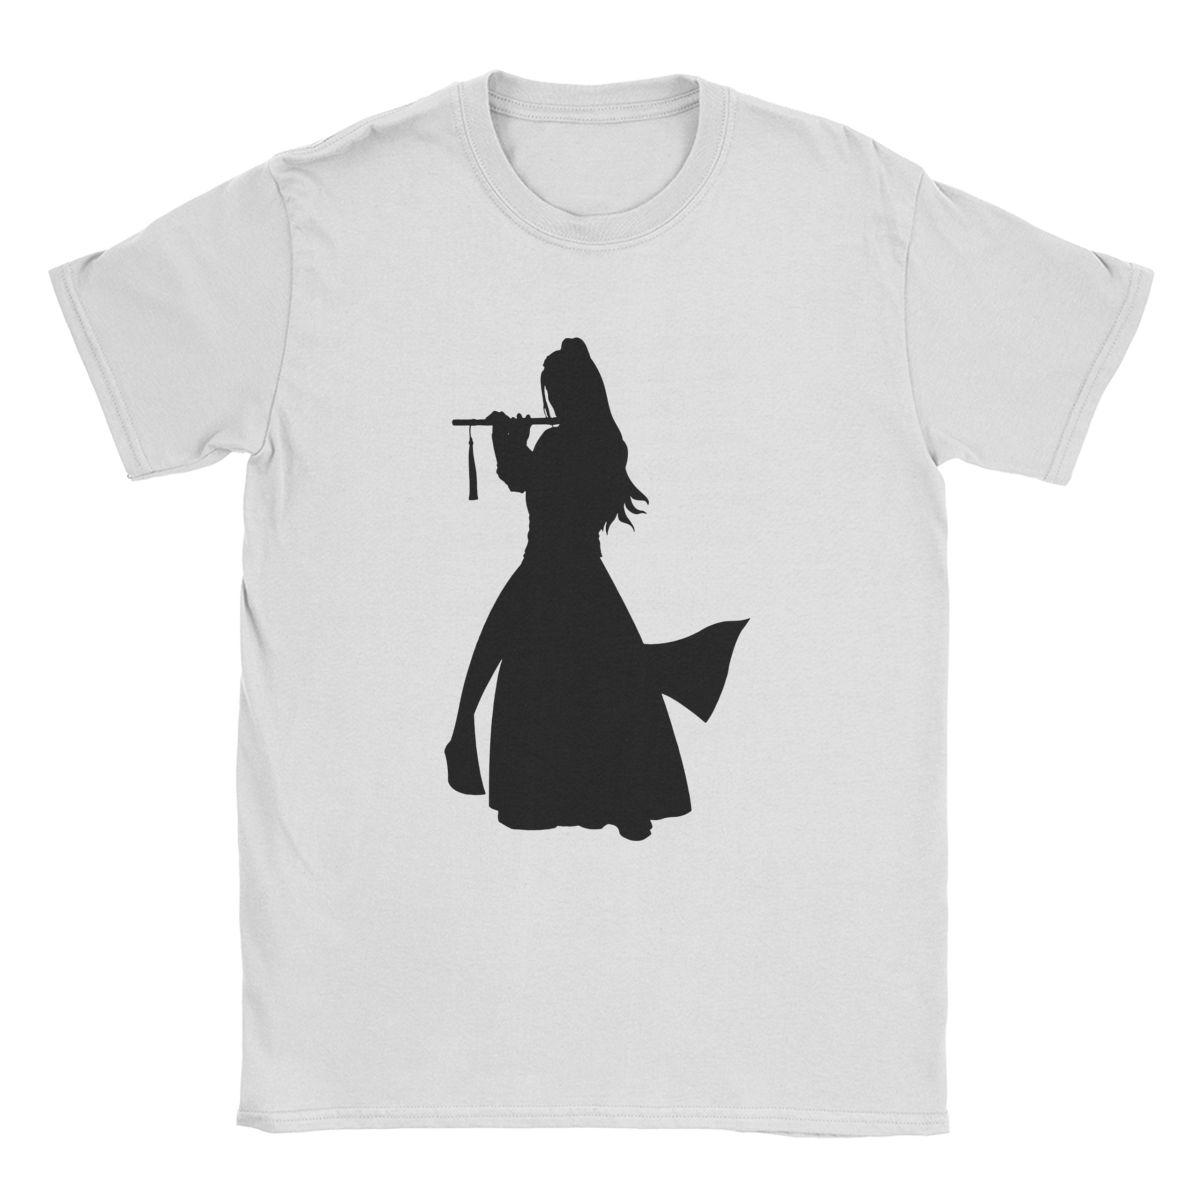 Изображение товара: Мужские футболки из 100% хлопка, футболки с коротким рукавом и вырезом лодочкой